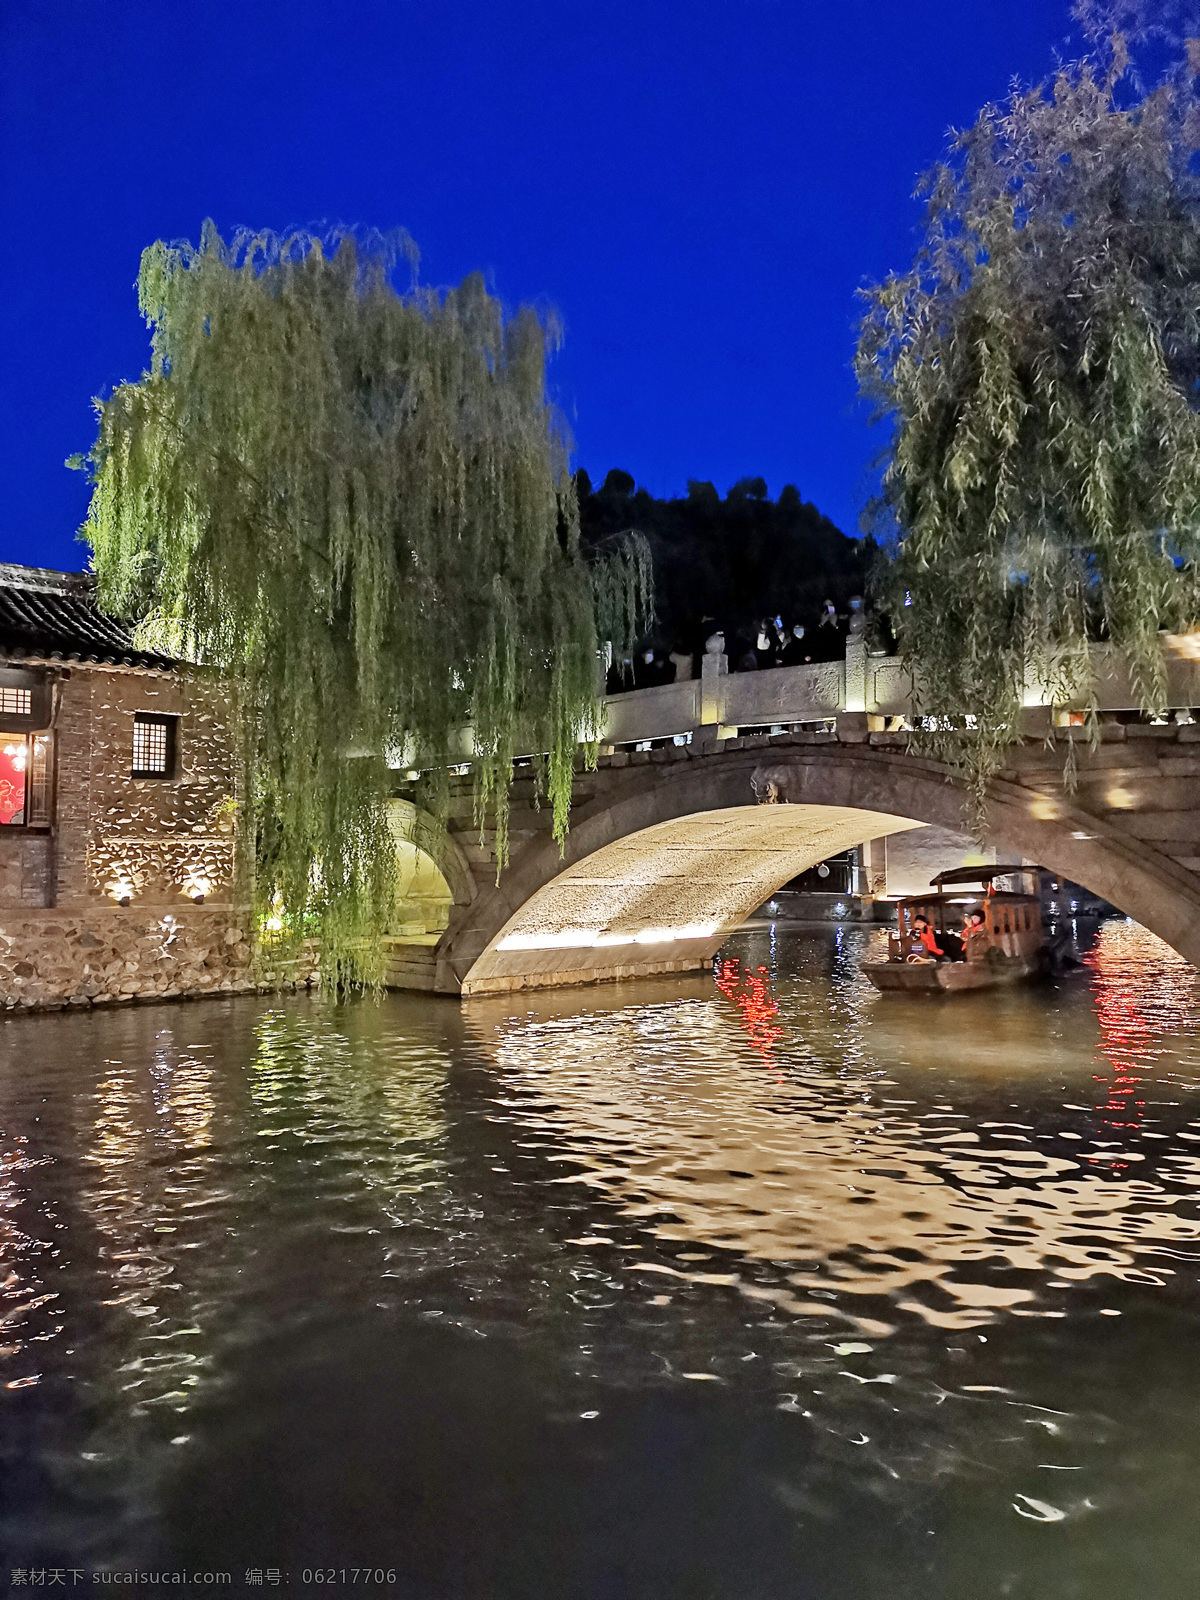 古北水镇图片 古北水镇 夜景 夜色 秋色 小桥流水 水乡 北京 旅游摄影 国内旅游